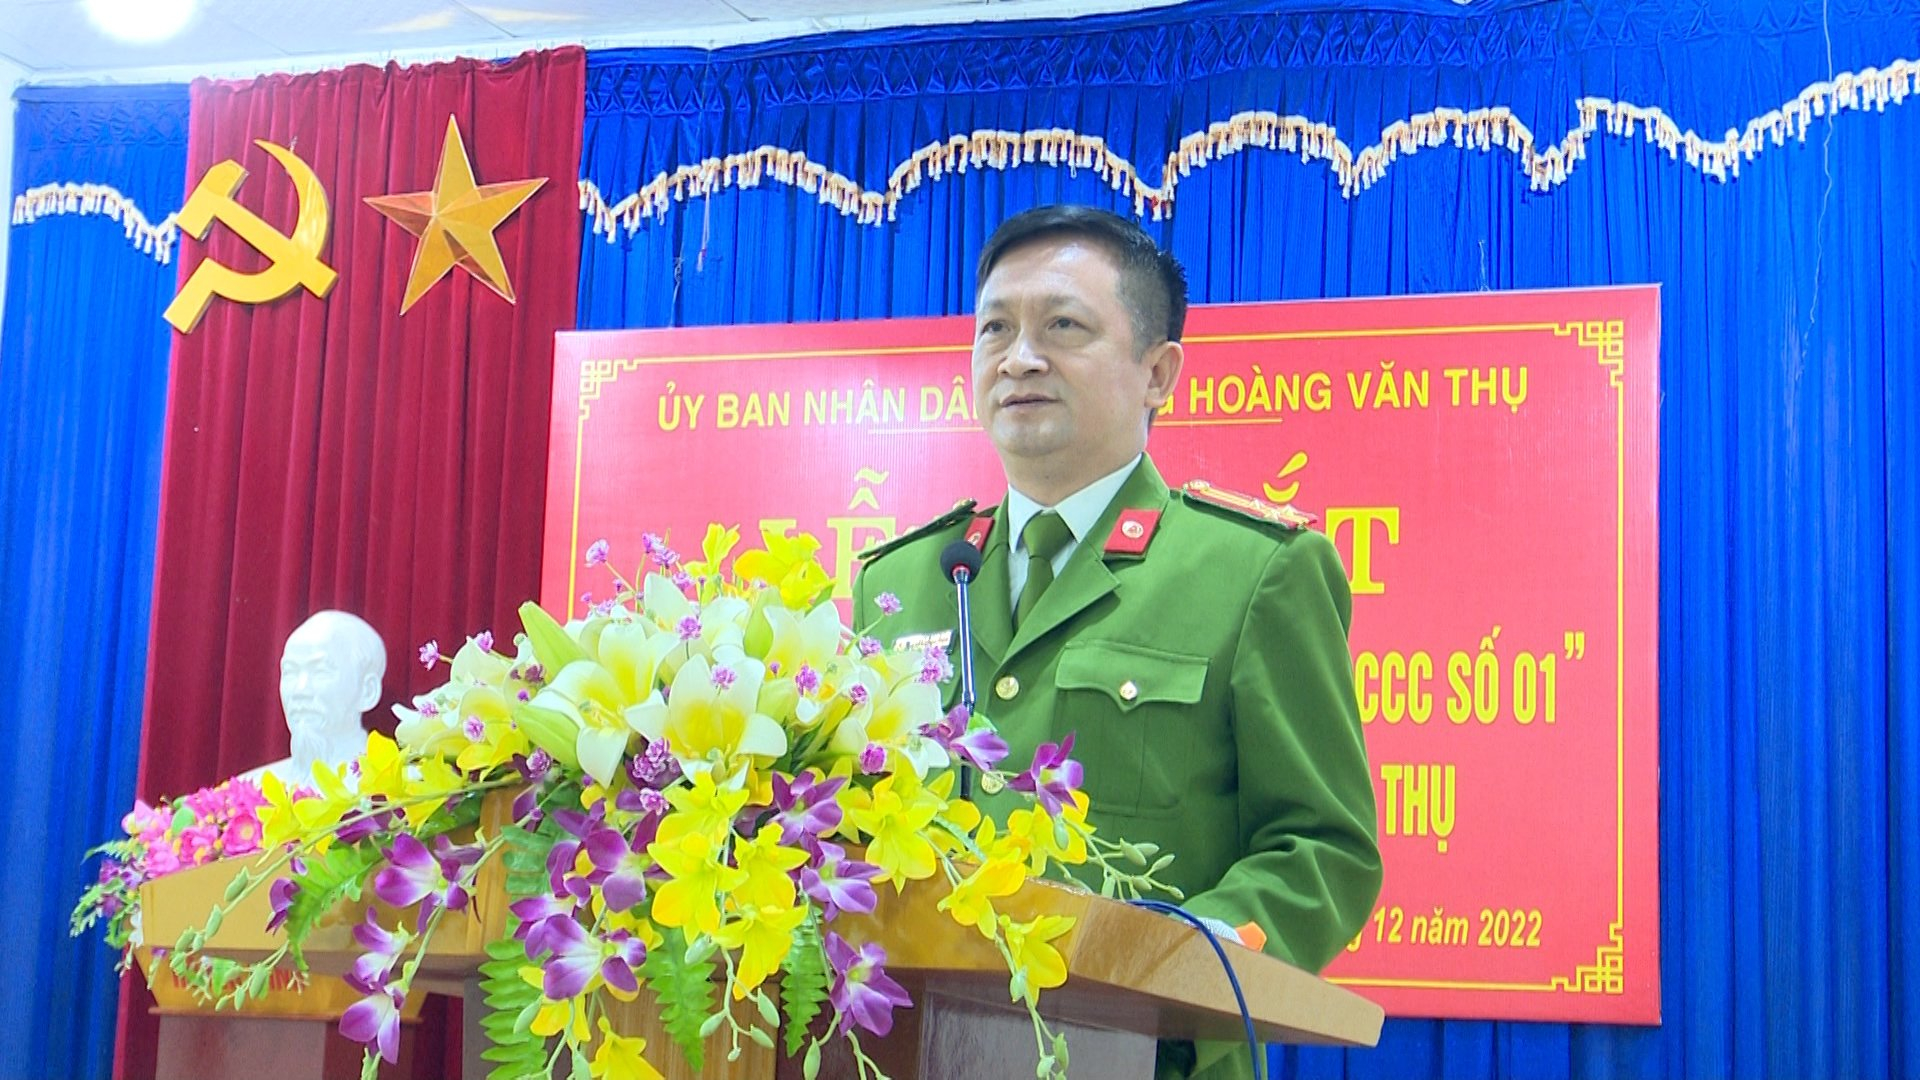 Thượng tá Nguyễn Anh Đức, Phó Trưởng Công an Thành phố Thái Nguyên phát biểu tại buổi ra mắt.